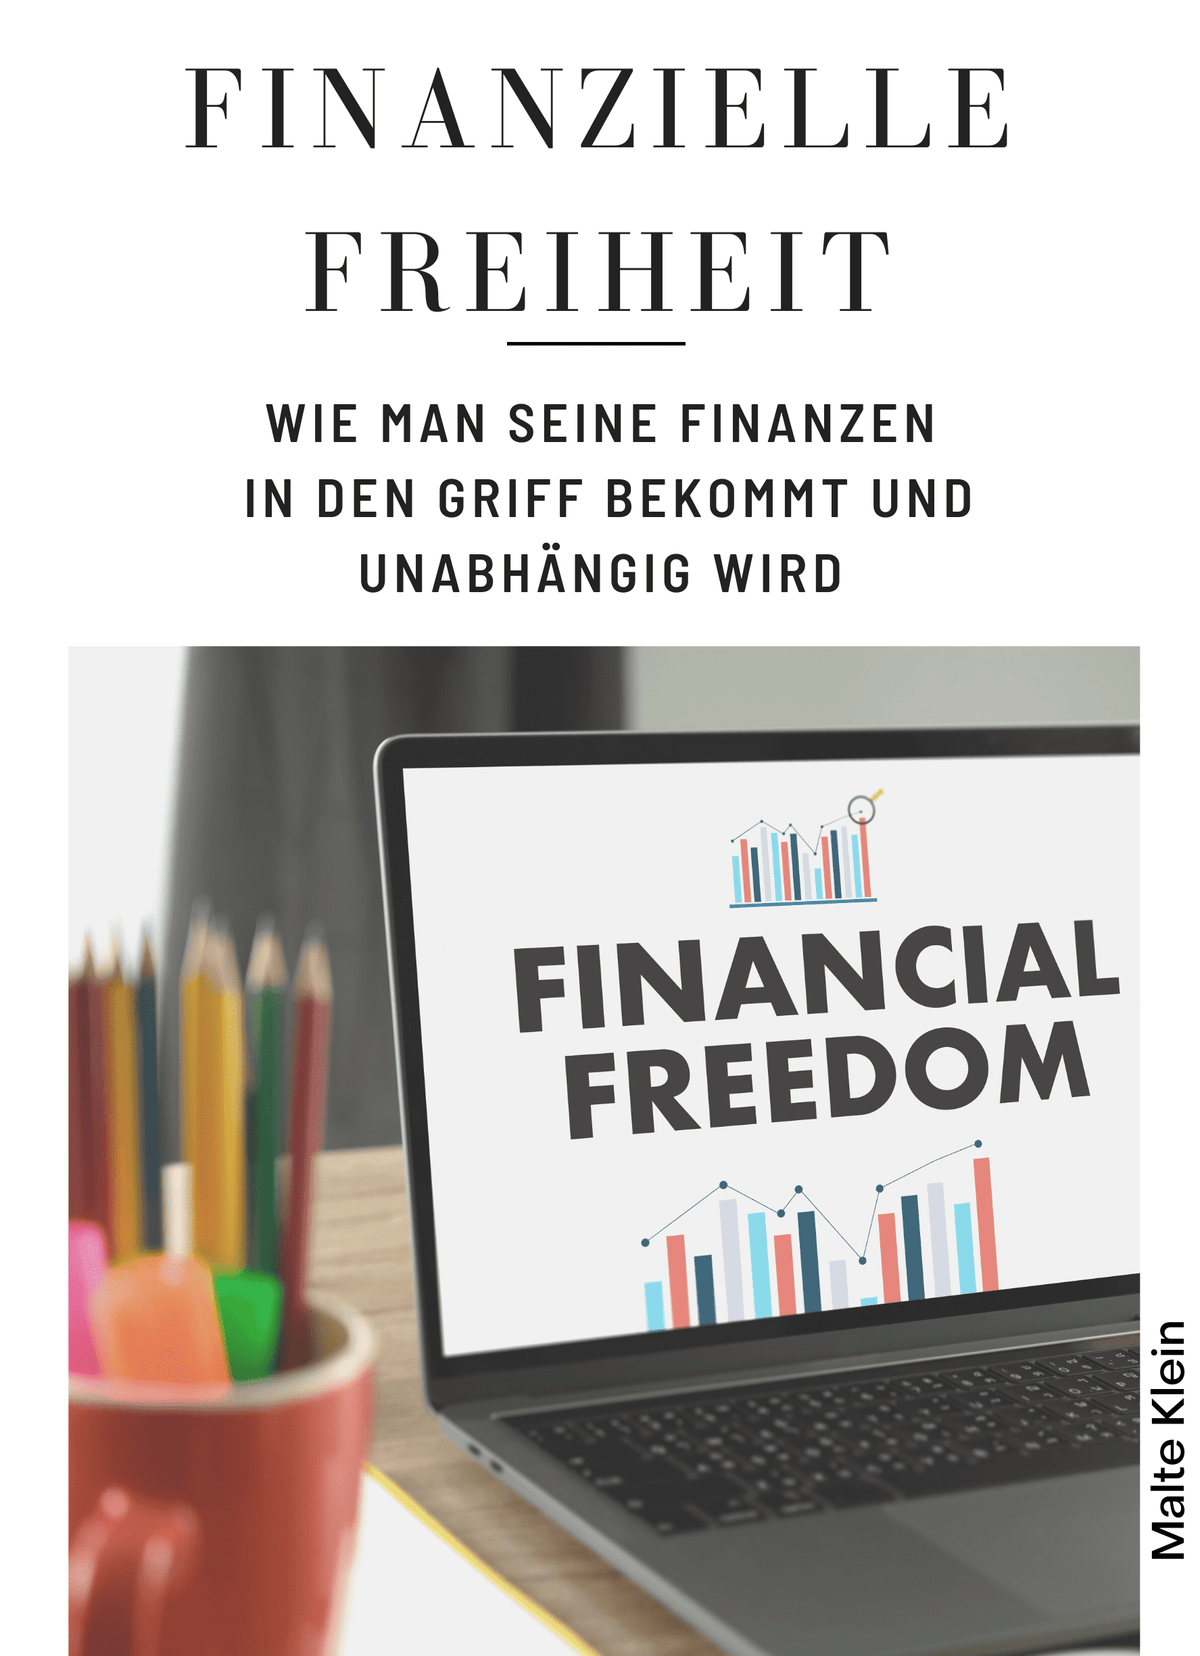 Finanzielle Freiheit